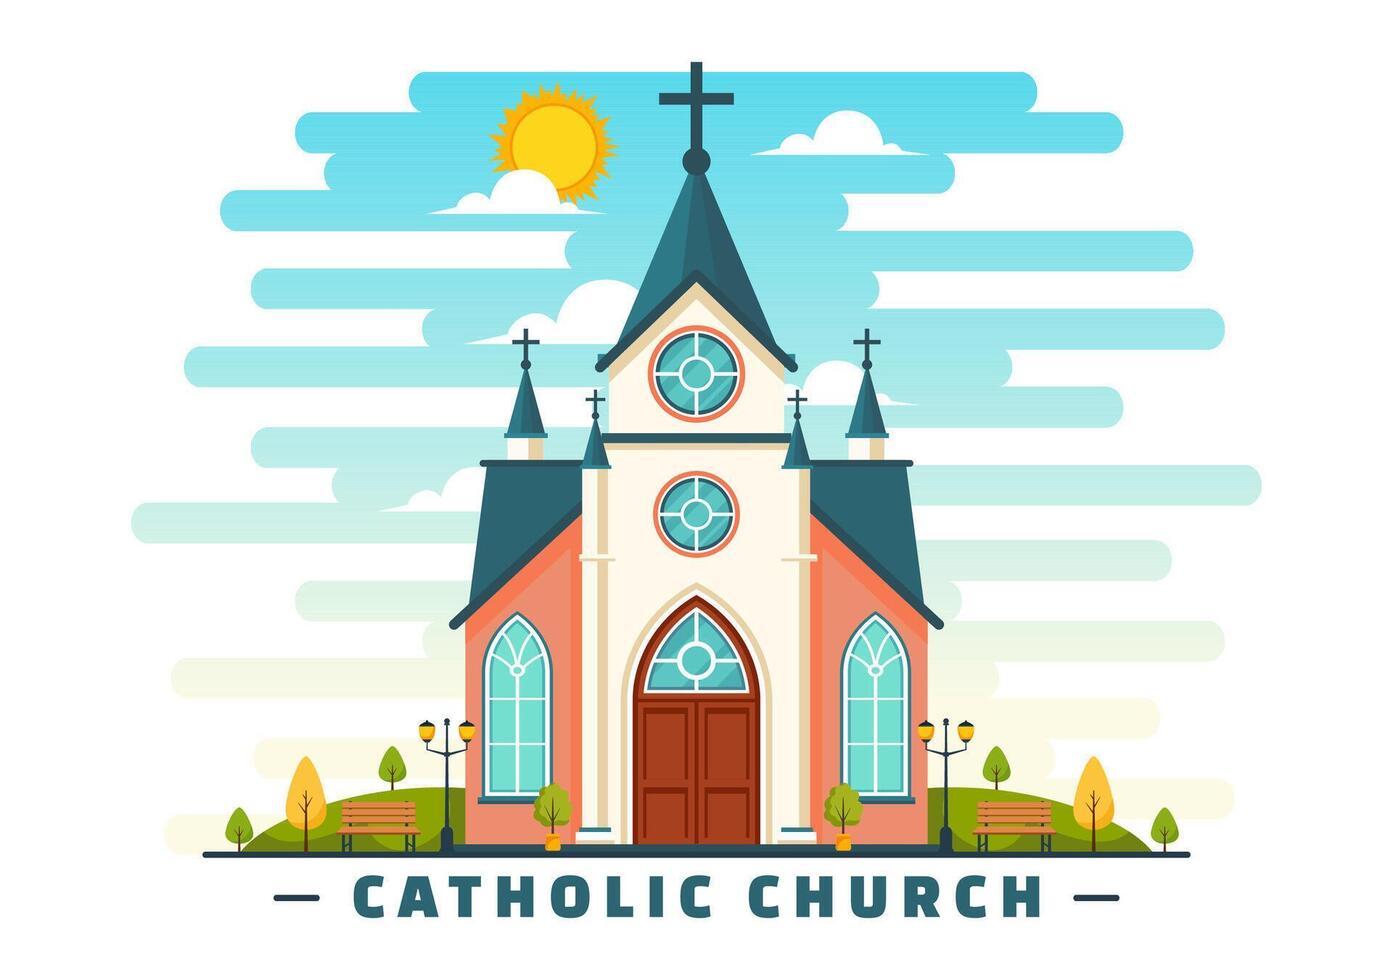 katedral katolik kyrka byggnad vektor illustration med arkitektur, medeltida och modern kyrkor interiör design i platt tecknad serie bakgrund